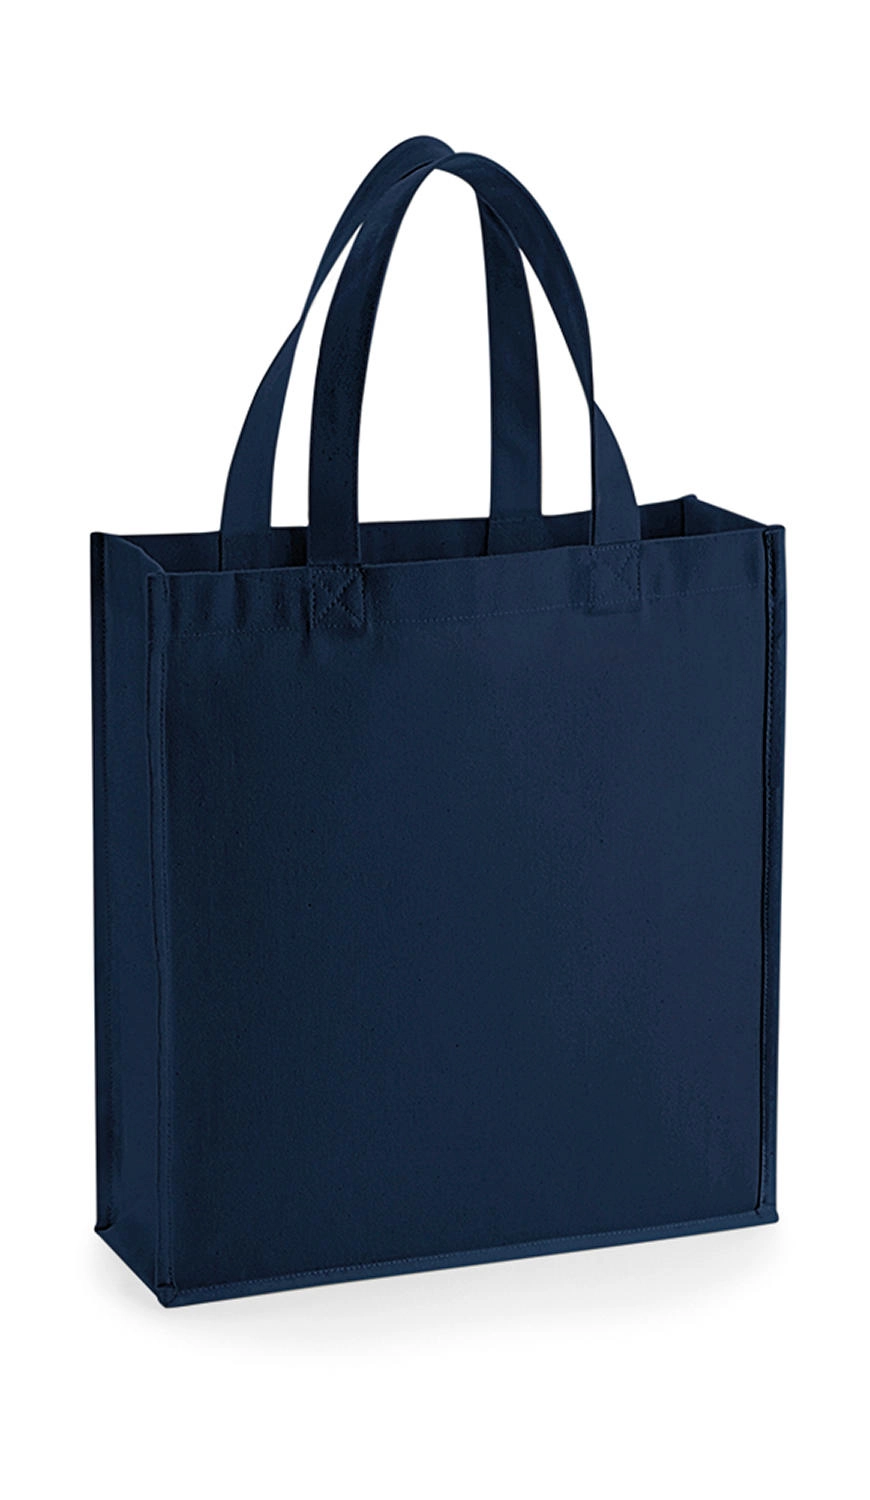 Gallery Canvas Gift Bag zum Besticken und Bedrucken in der Farbe French Navy mit Ihren Logo, Schriftzug oder Motiv.